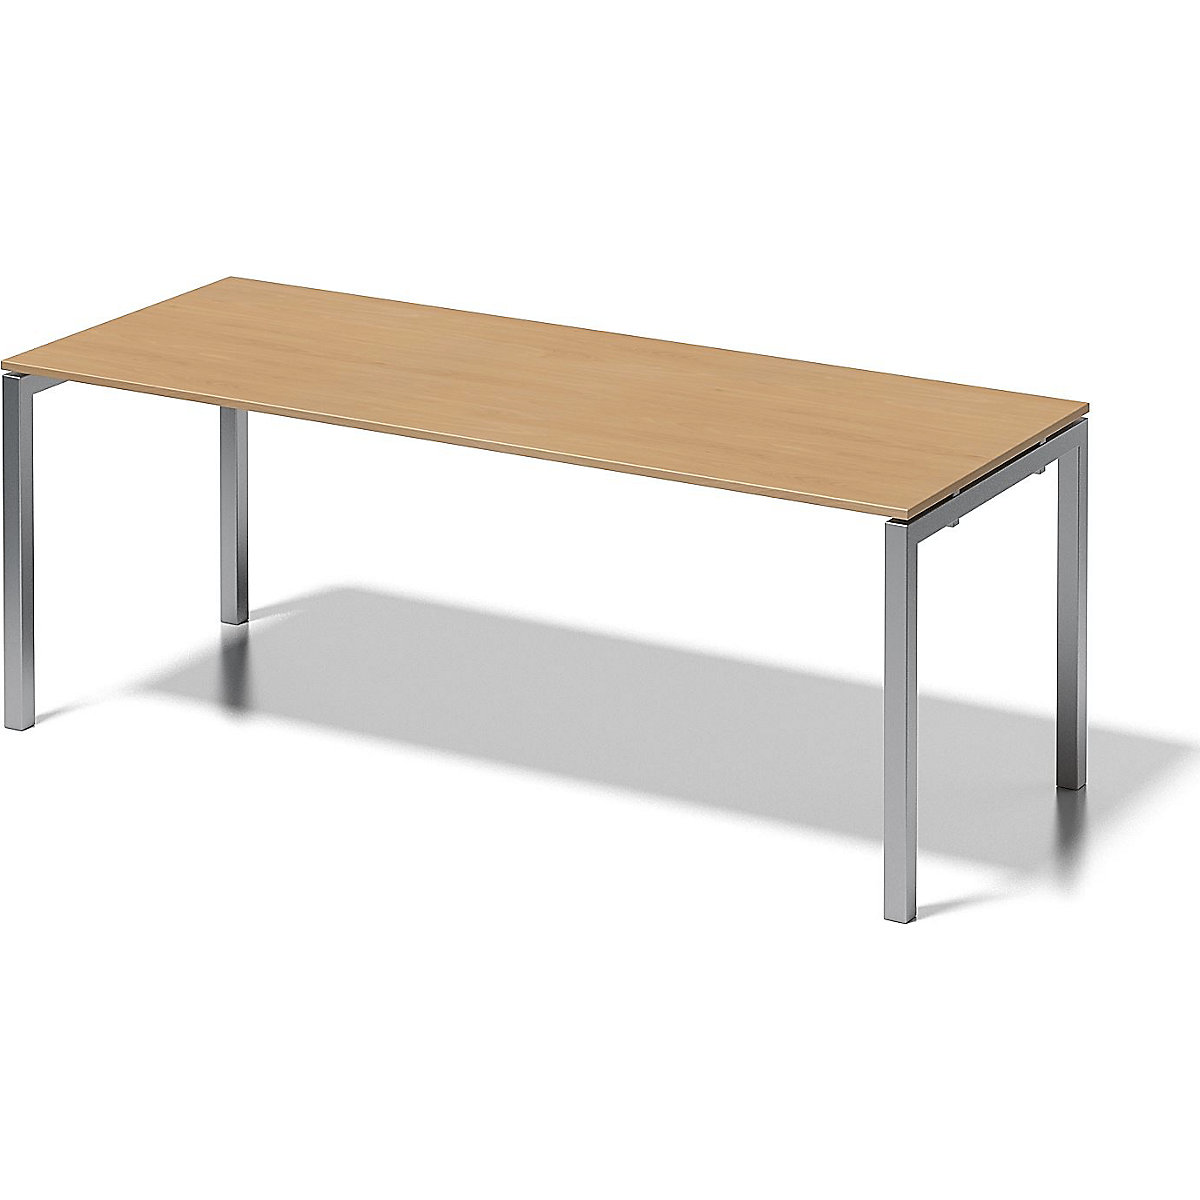 Písací stôl CITO, podstavec v tvare U – BISLEY, v x š x h 740 x 2000 x 800 mm, podstavec strieborná, doska stola buk-8